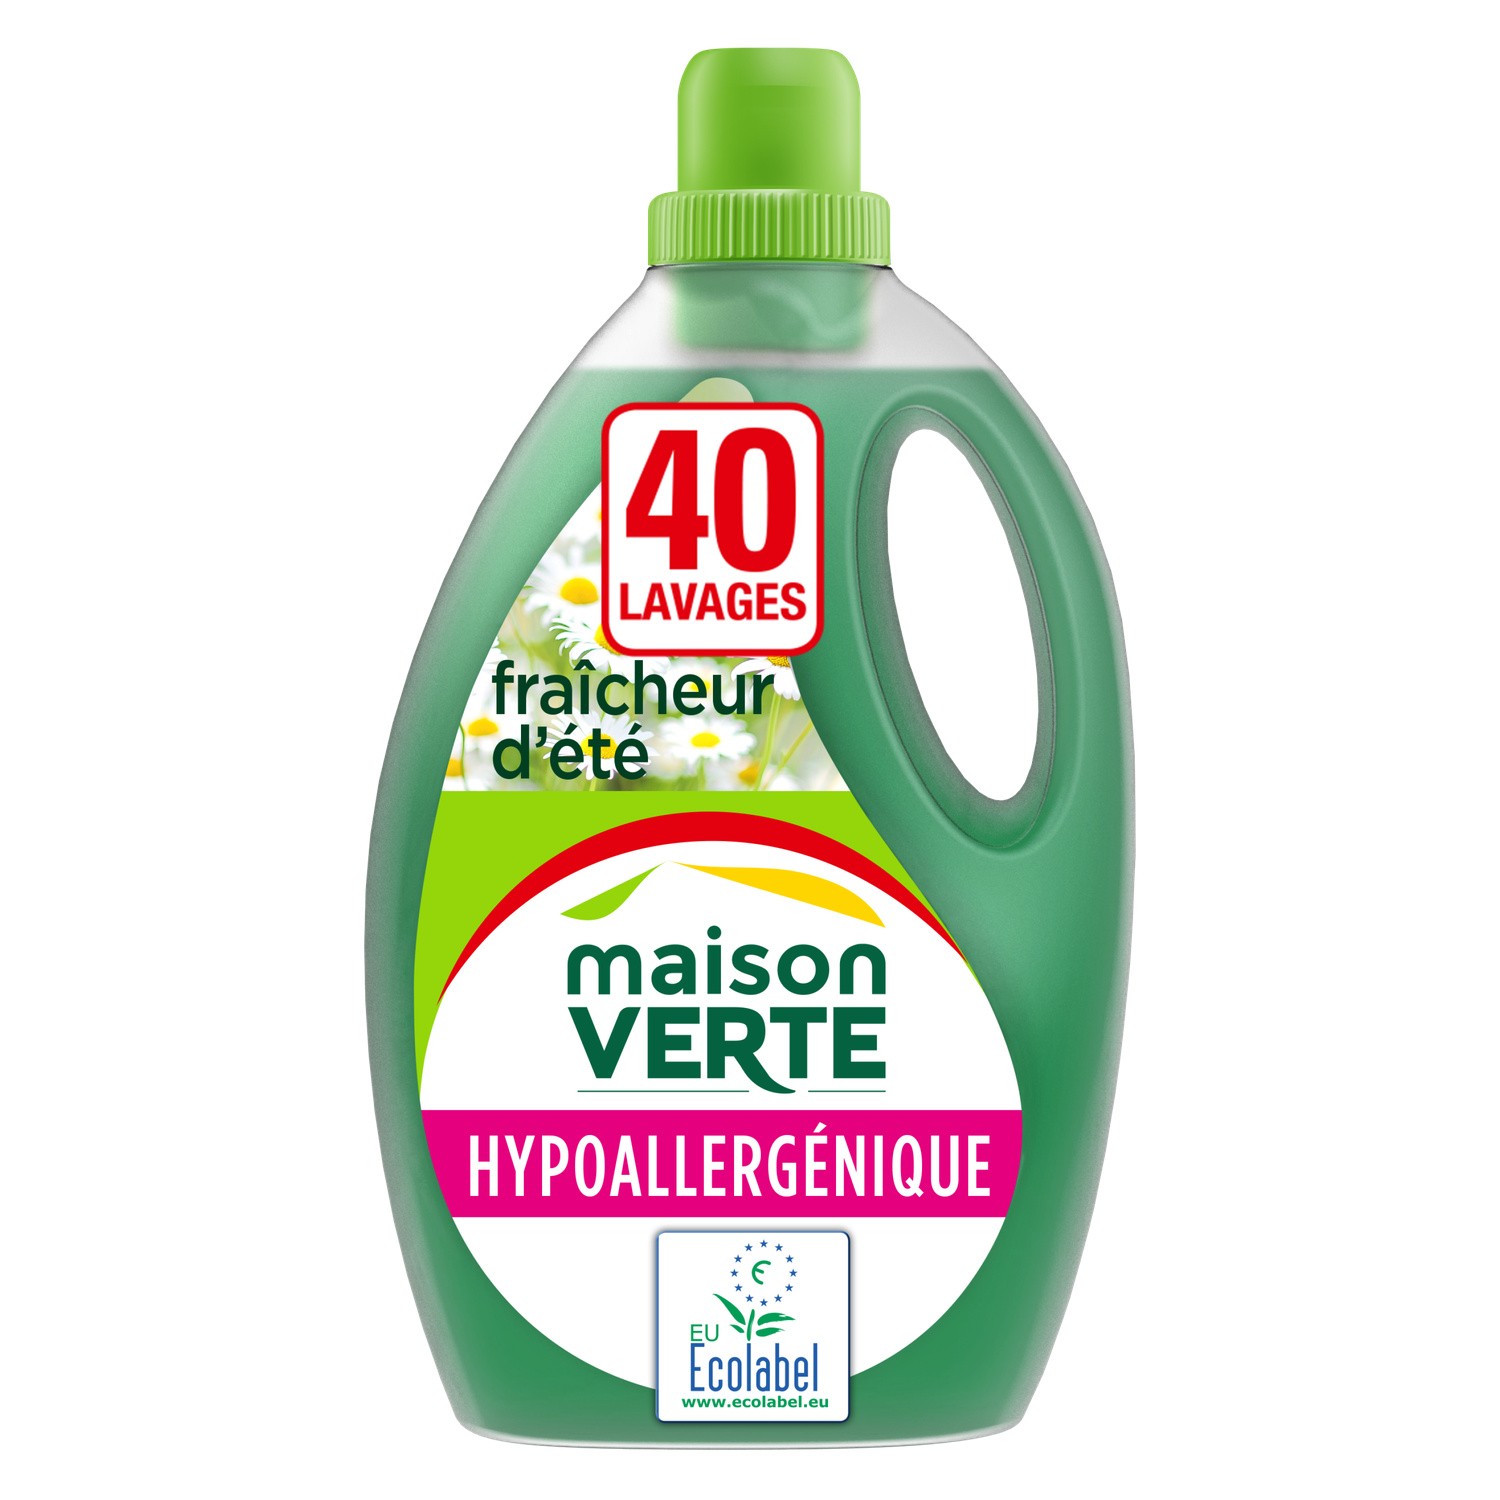 Maison Verte detergent hypoallergenic x40 washes 2.4L